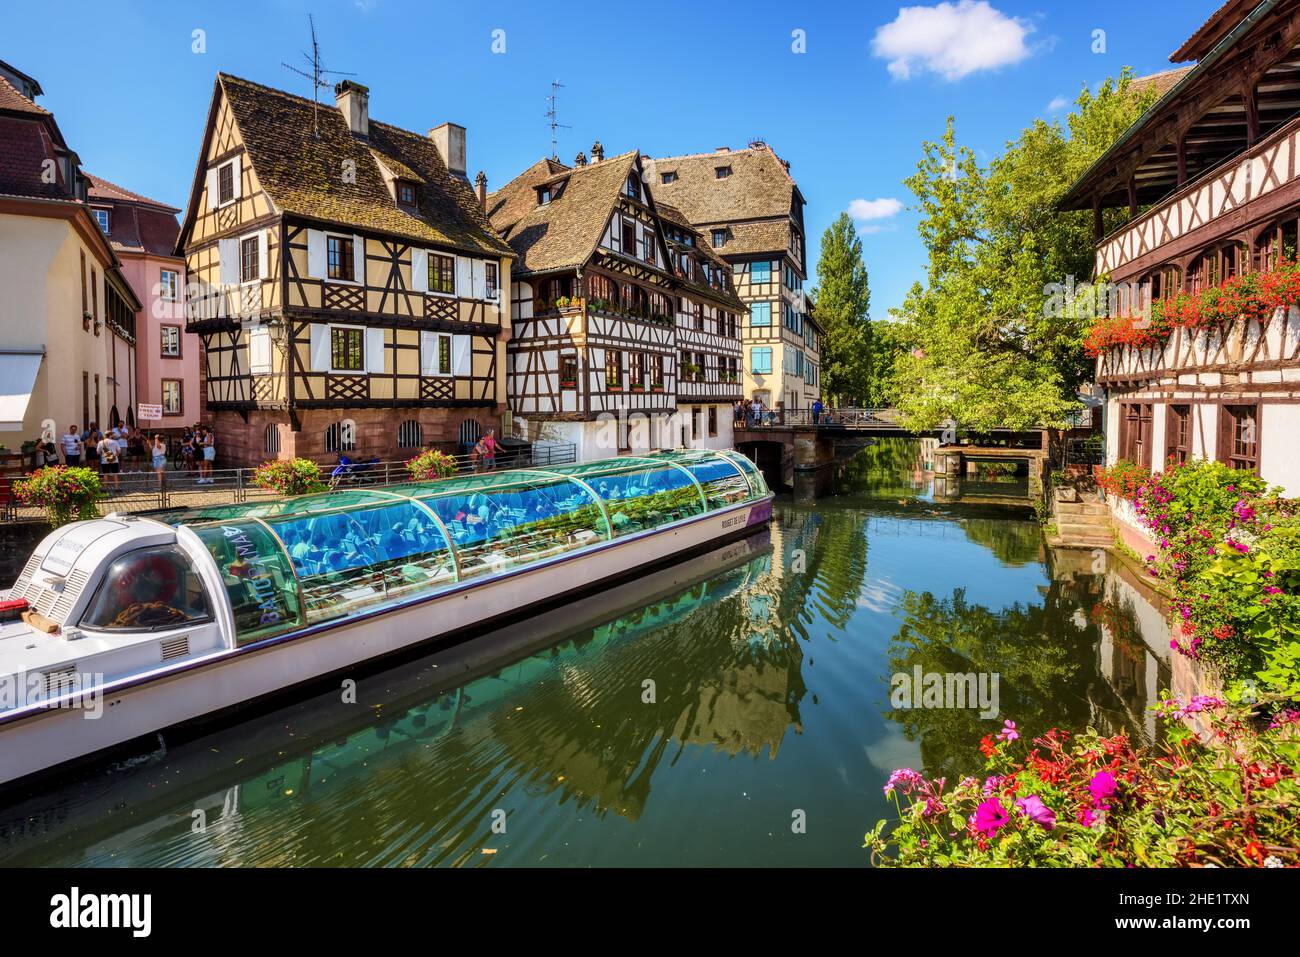 Estrasburgo, Francia - 15 de agosto de 2020: Barco turístico en el río Ill en el centro histórico de Estrasburgo, Alsacia, Francia. Los viajes en barco son populares touristi Foto de stock